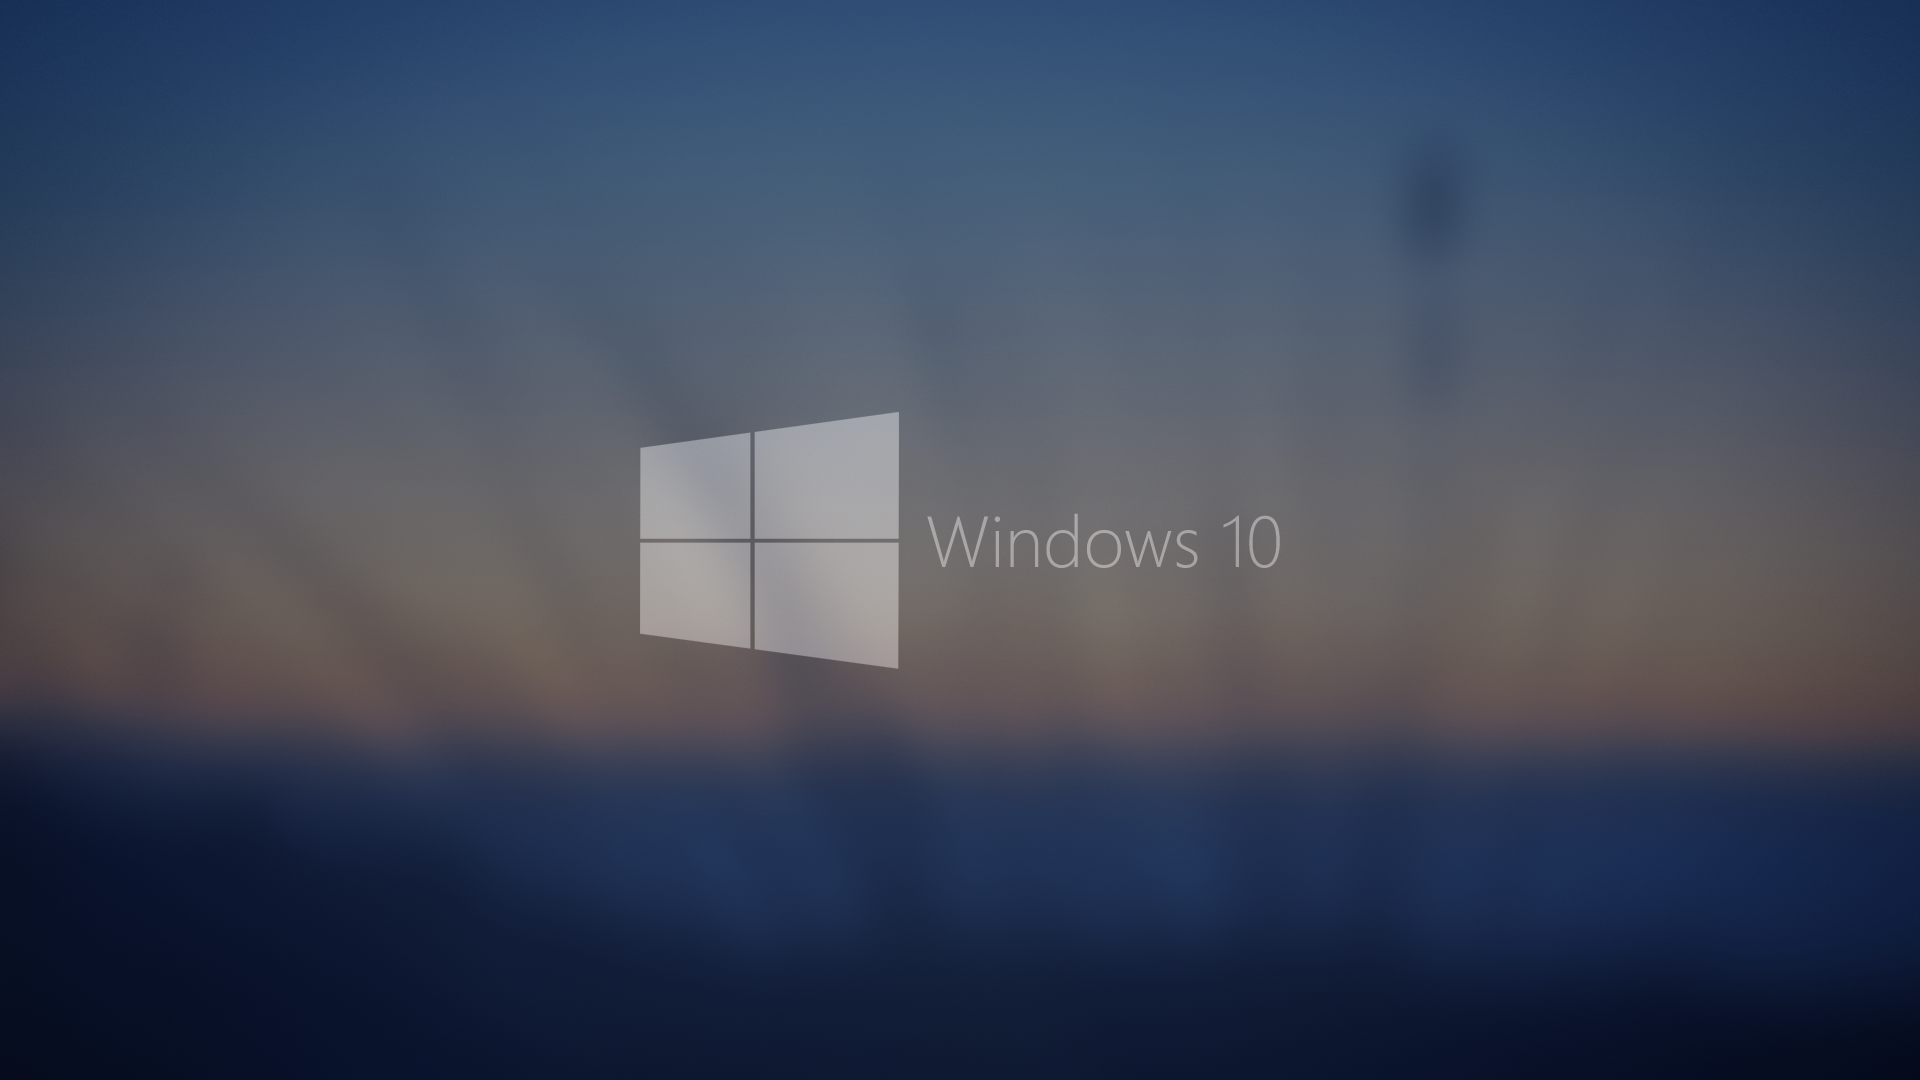 geschenkt-windows-10-das-erste-jahr-kostenlos